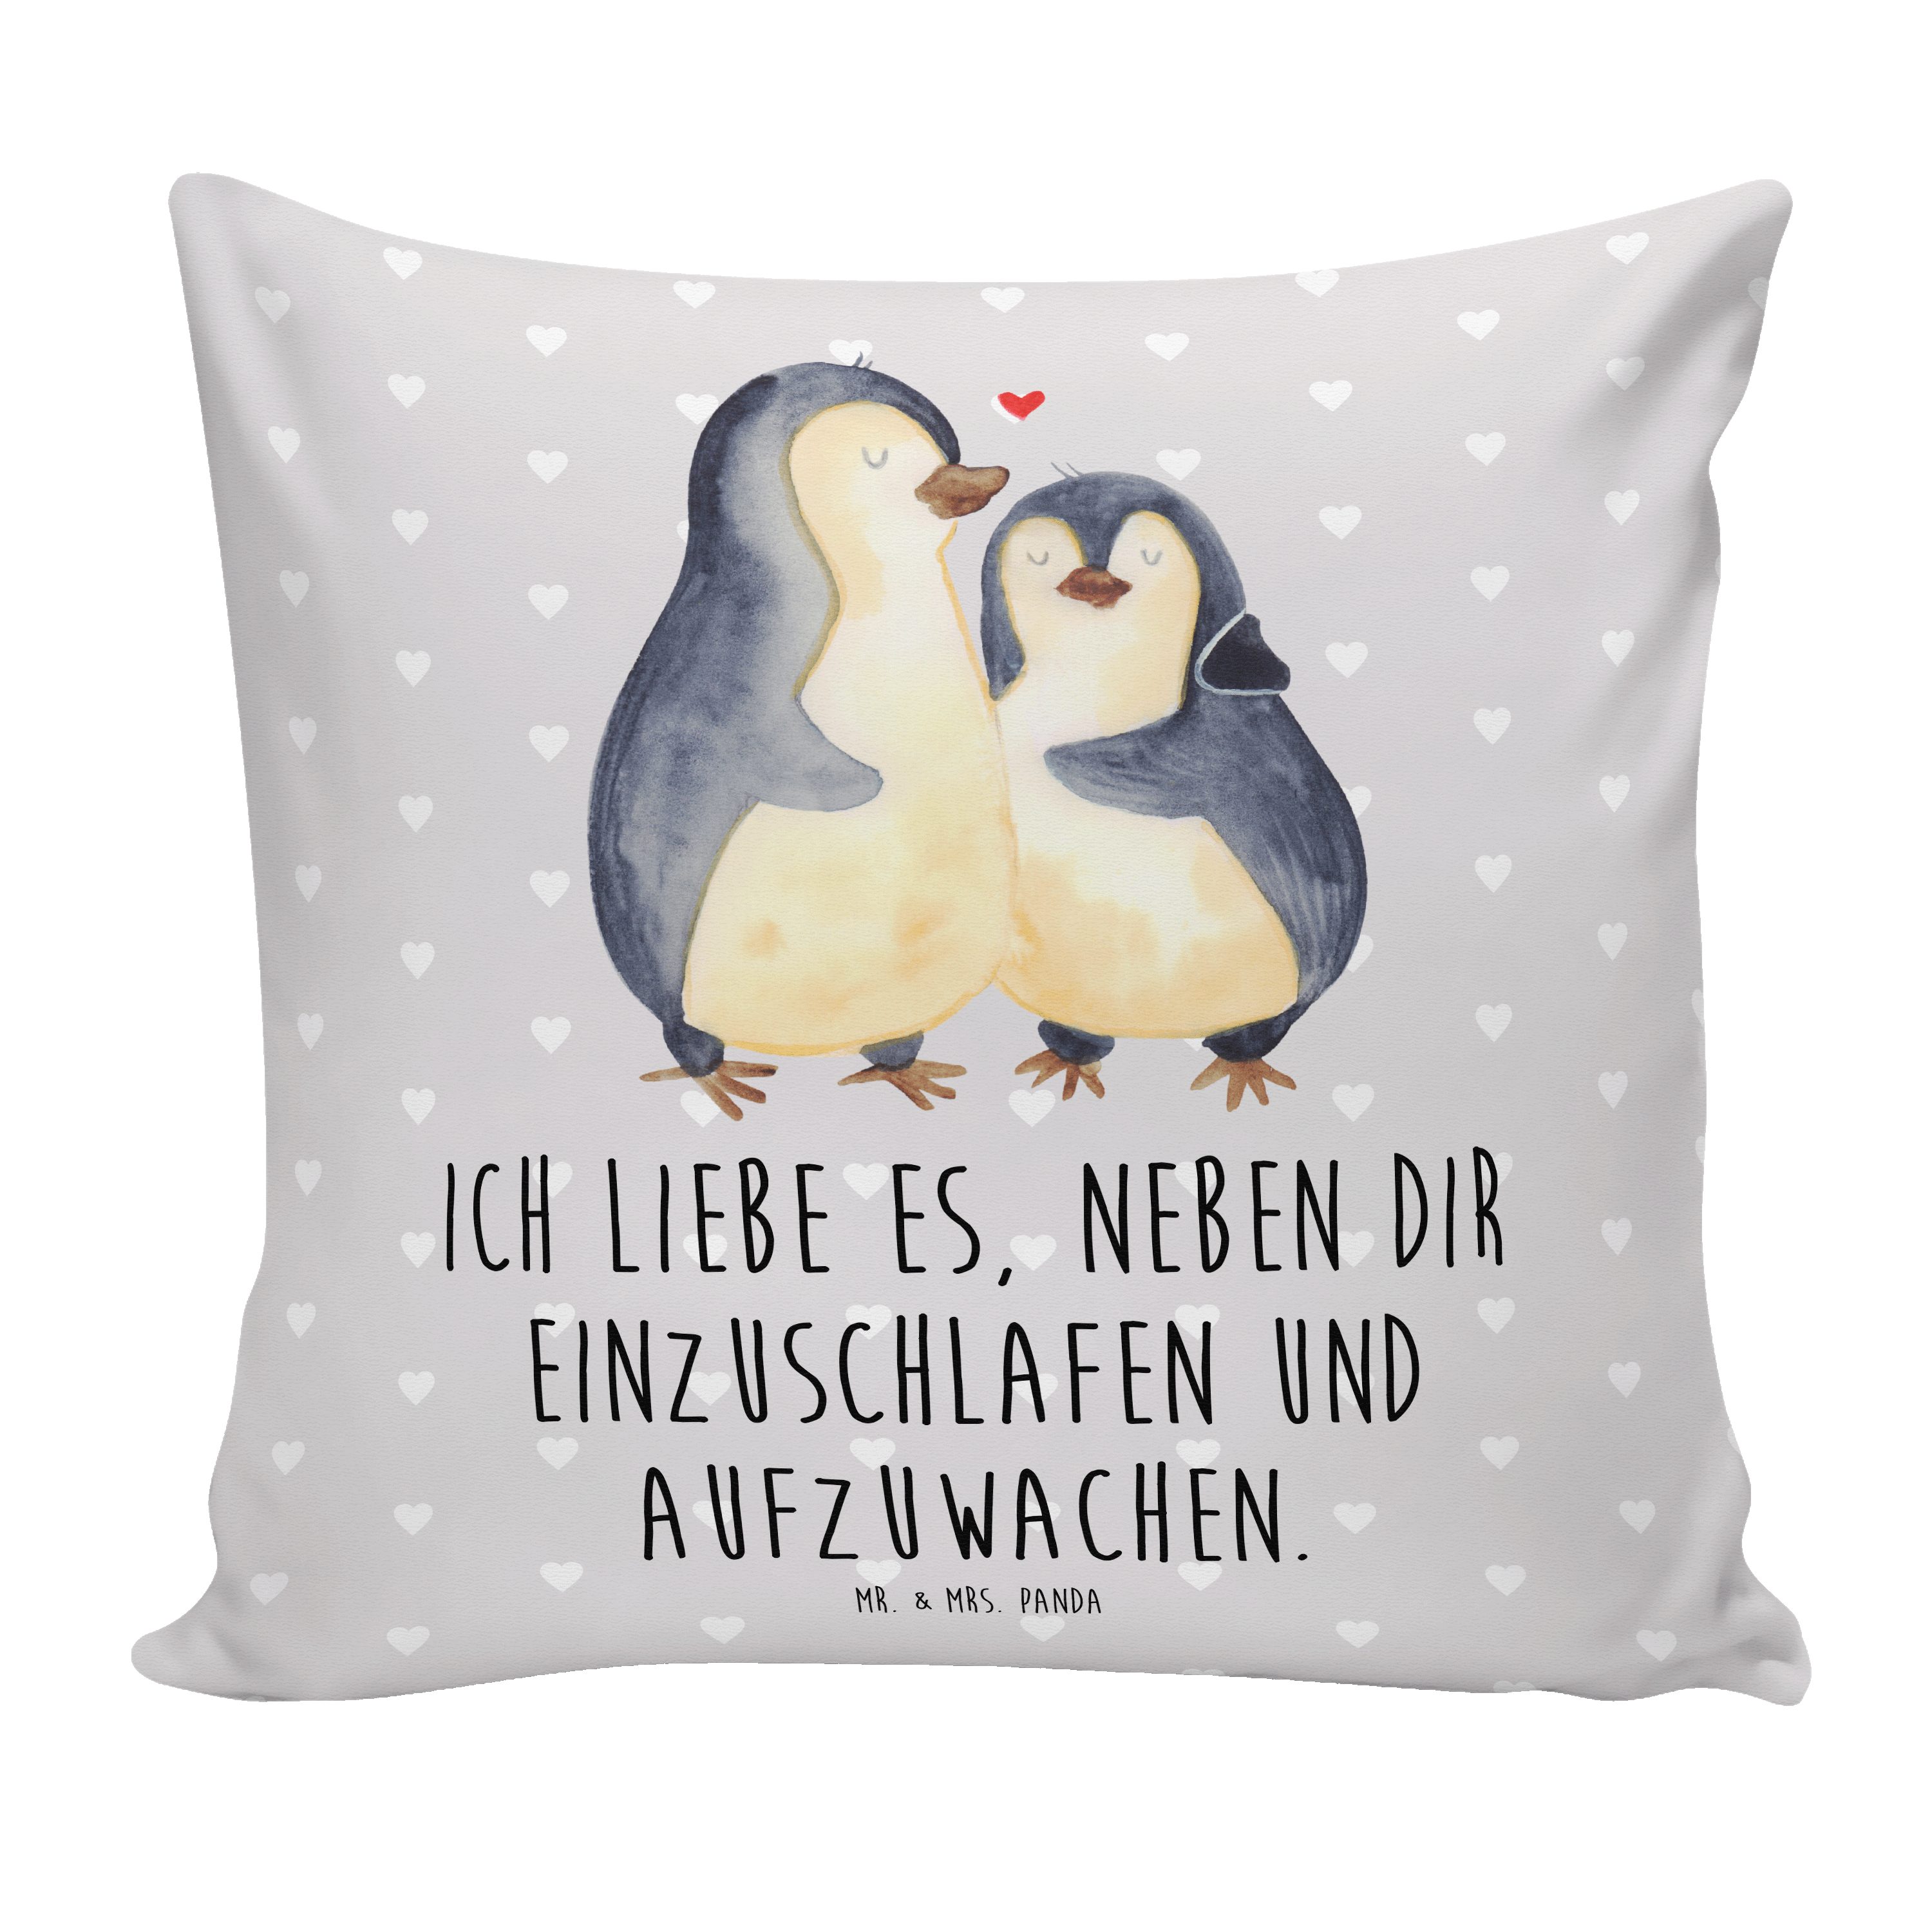 Mr. & Mrs. Panda Dekokissen Pinguine Einschlafen - Grau Pastell - Geschenk, Valentinstag, Sofakis